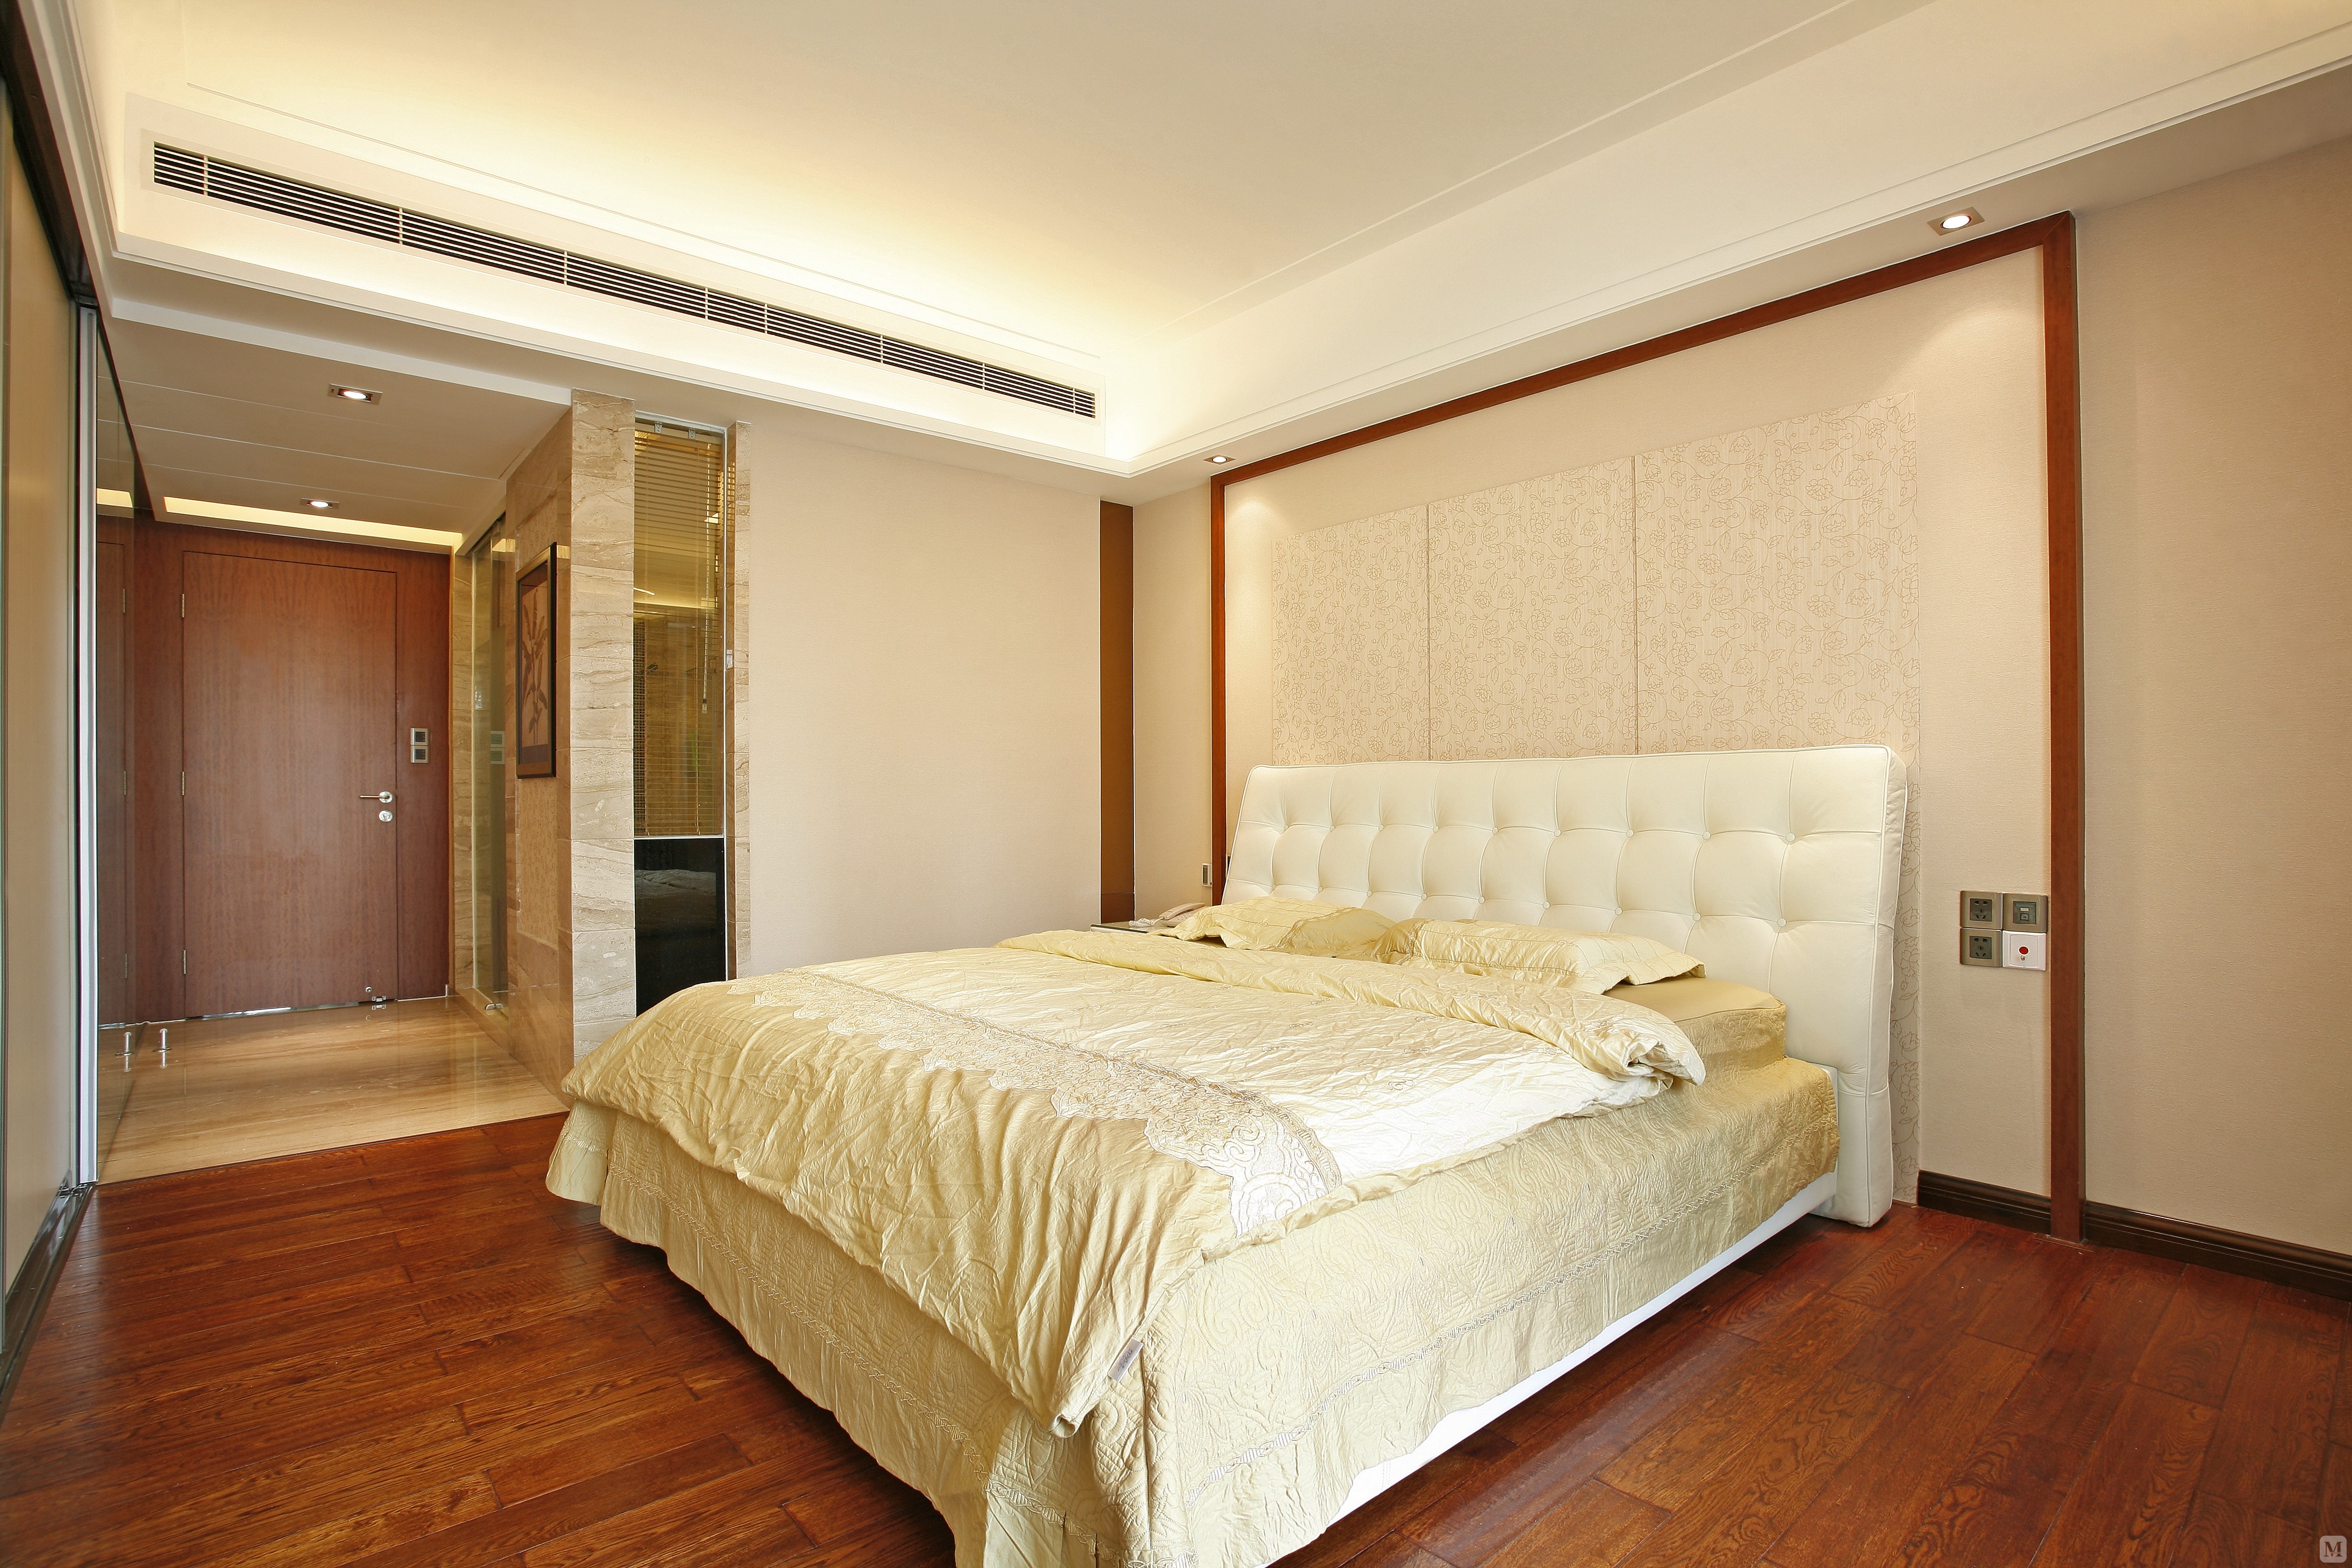 简欧风格的卧室中我们将居室设计的非常的通透，强调了室内空间的宽敞。简欧风格是欧式风格演变而来的，采用了现代化的元素加入其中将其变得非常的简单。在室内处理方面采用舒适的床饰，引入最大限度的自然光。让流畅的感觉与优雅并存，将欧式风格现代化。